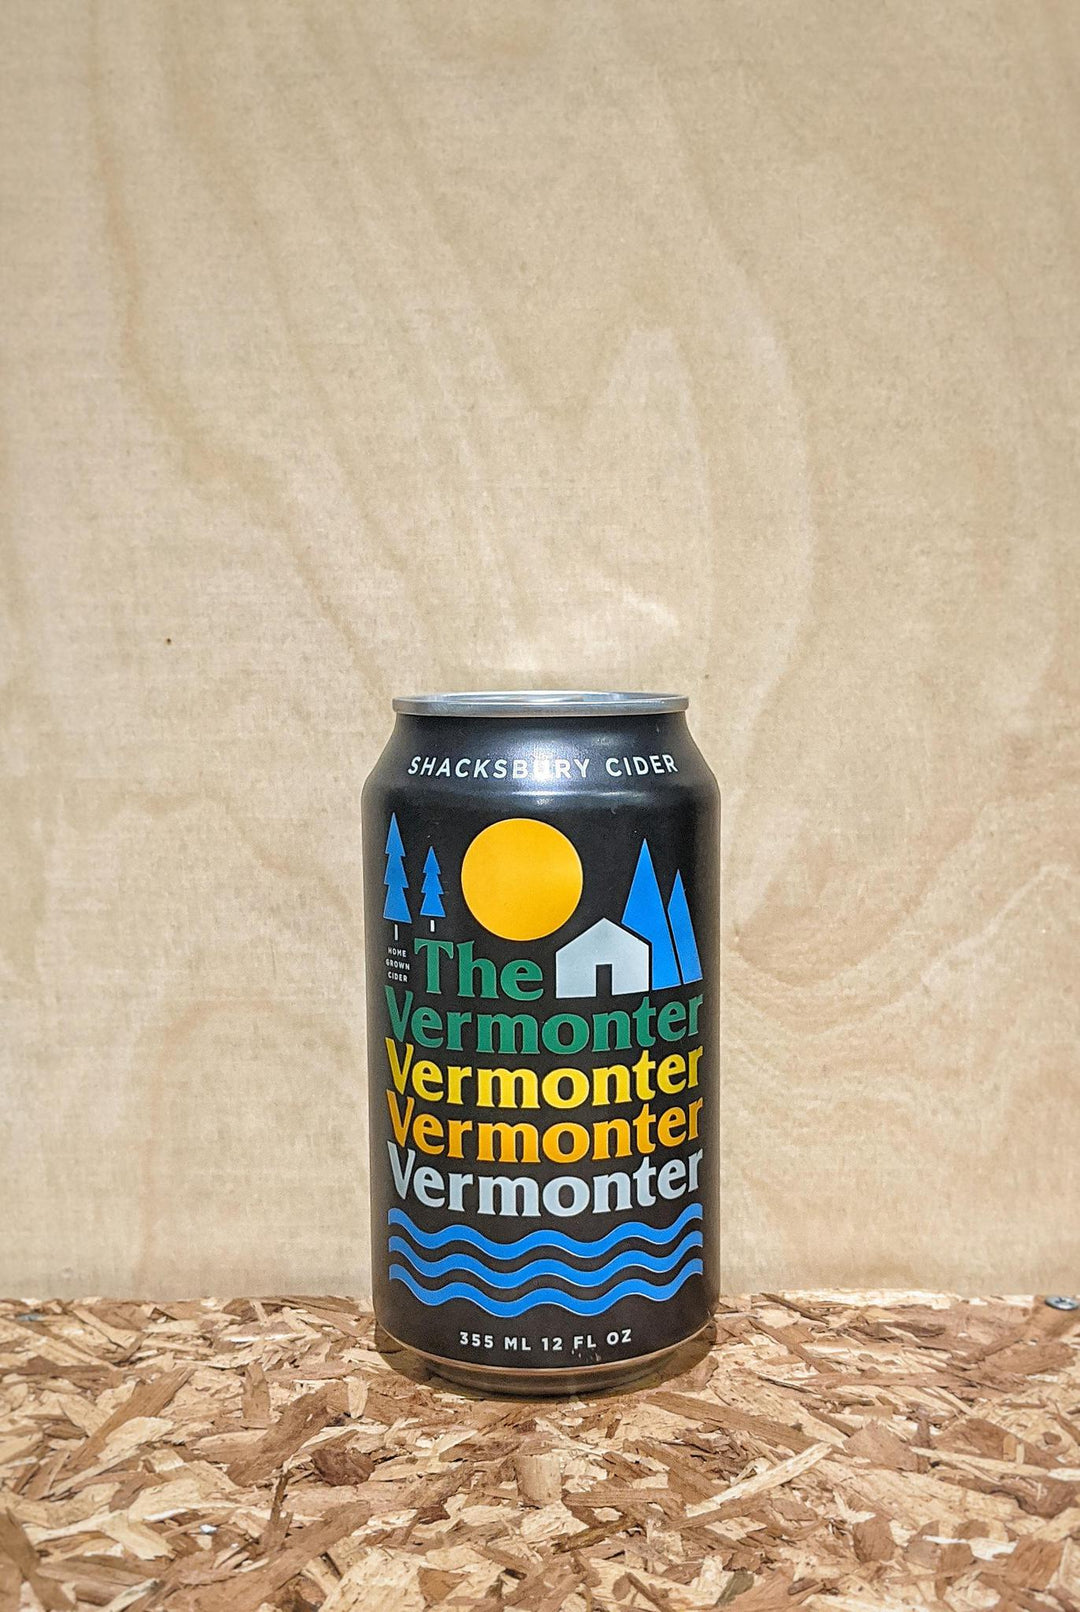 Shacksbury Cider 'The Vermonter' Cider w/ Gin Botanicals Vergennes Vermont